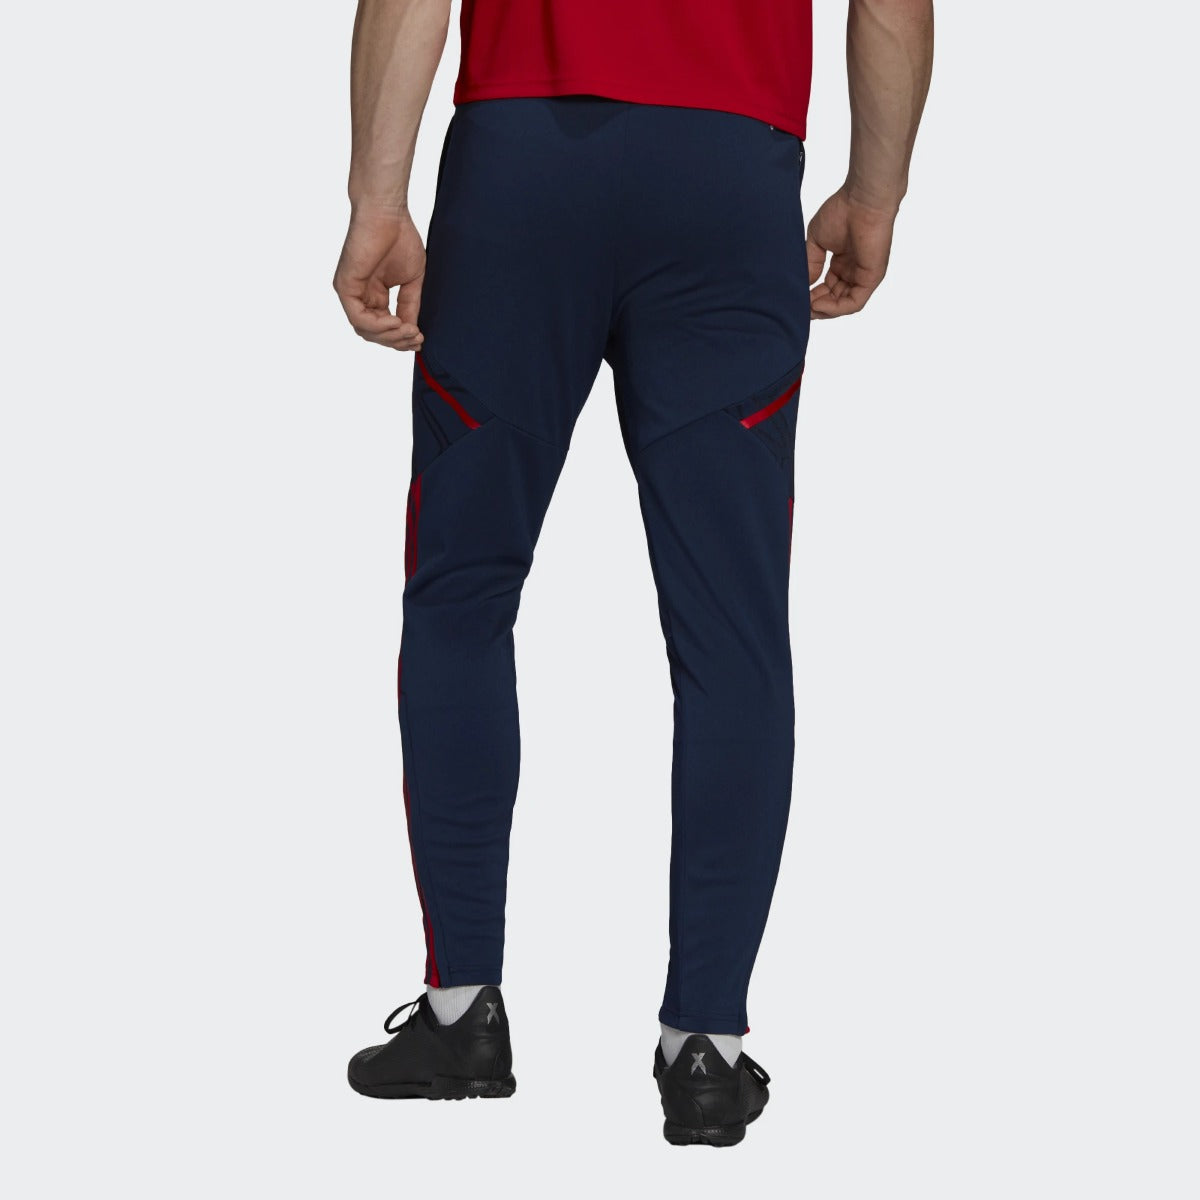 Pantaloni allenamento Arsenal Condivo 2022/2023 - Blu/Rosso